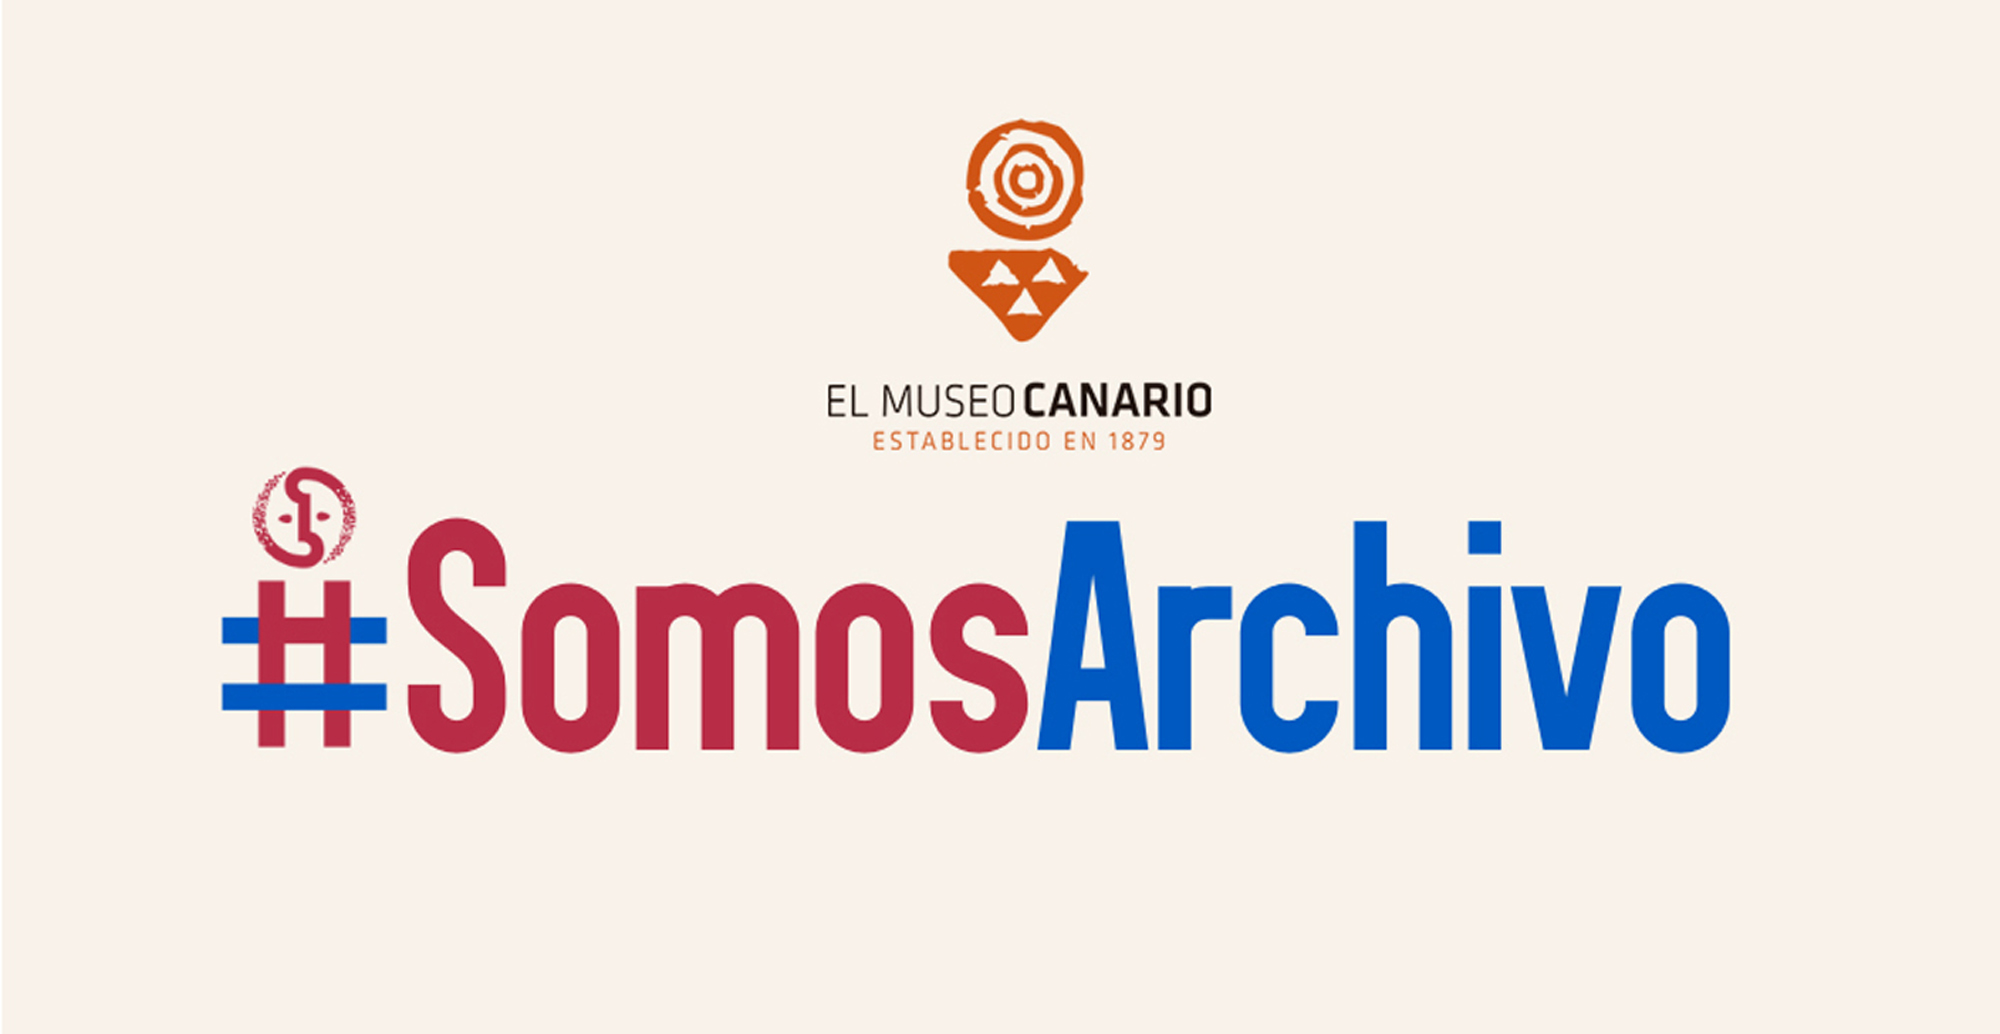 Somos Archivo logo museo canario copia